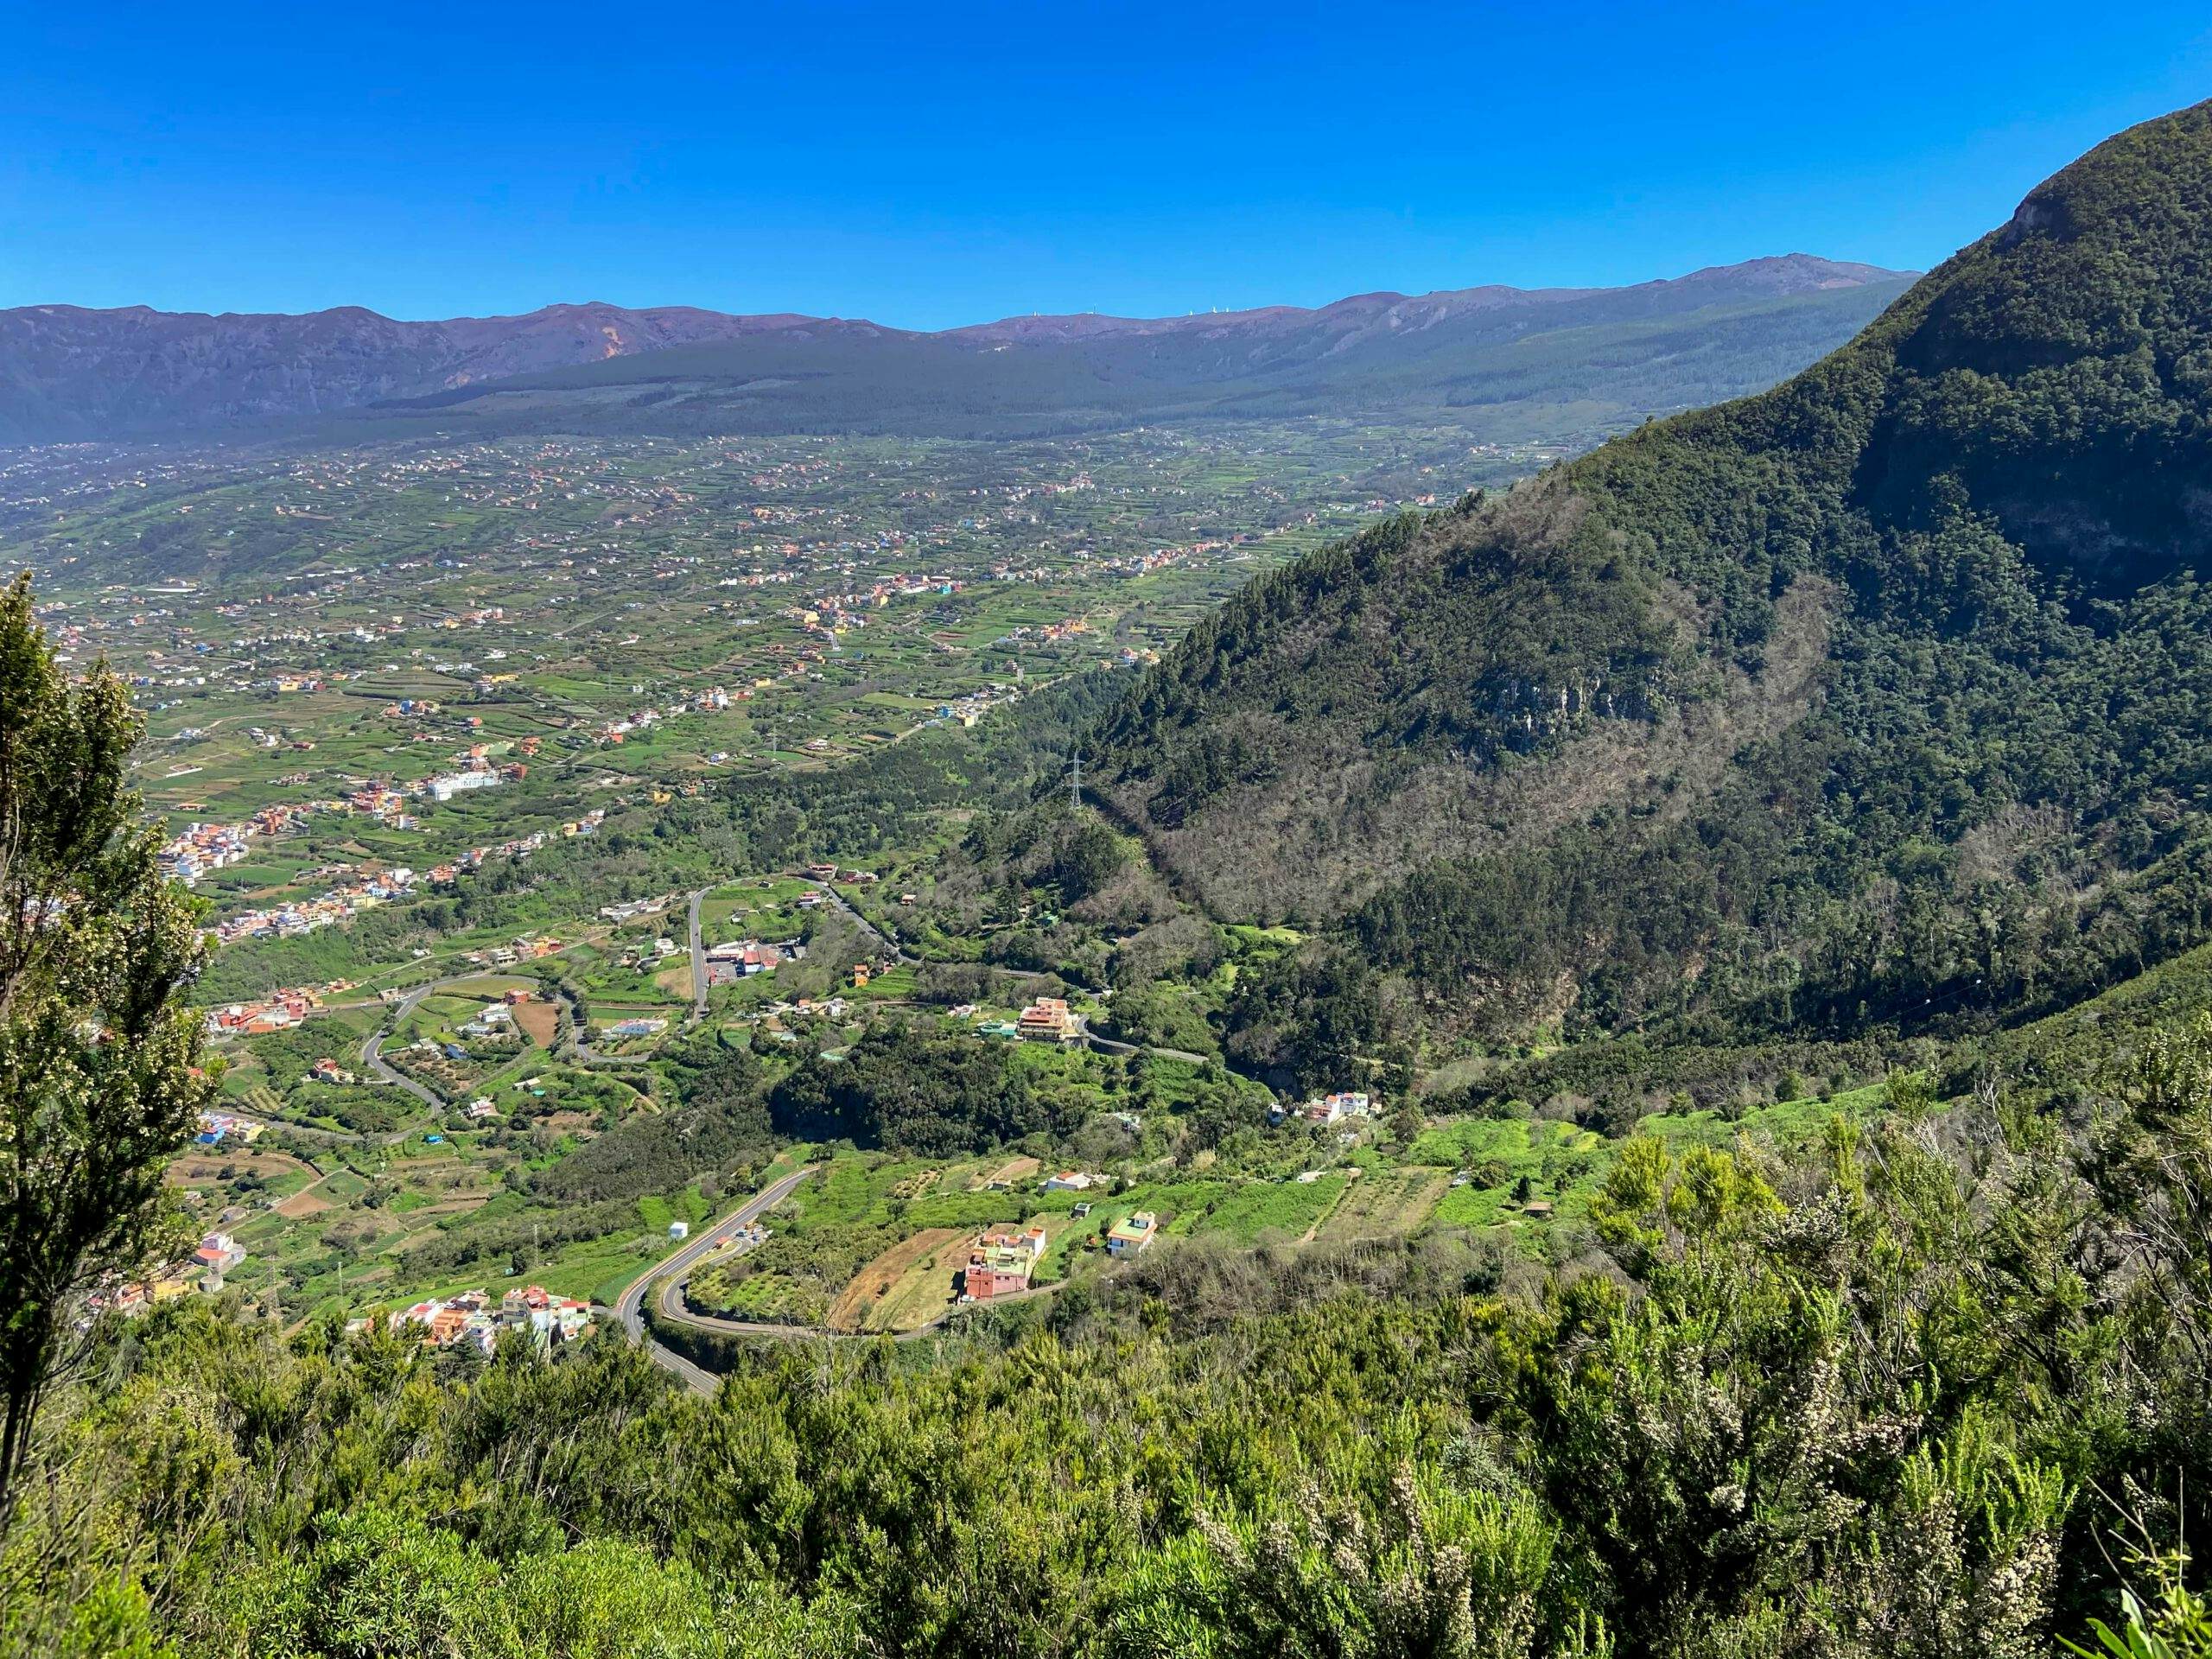 Wandern auf Teneriffa - Orotava Tal - Blick zurück vom Aufstiegsweg zum Mirador Corona